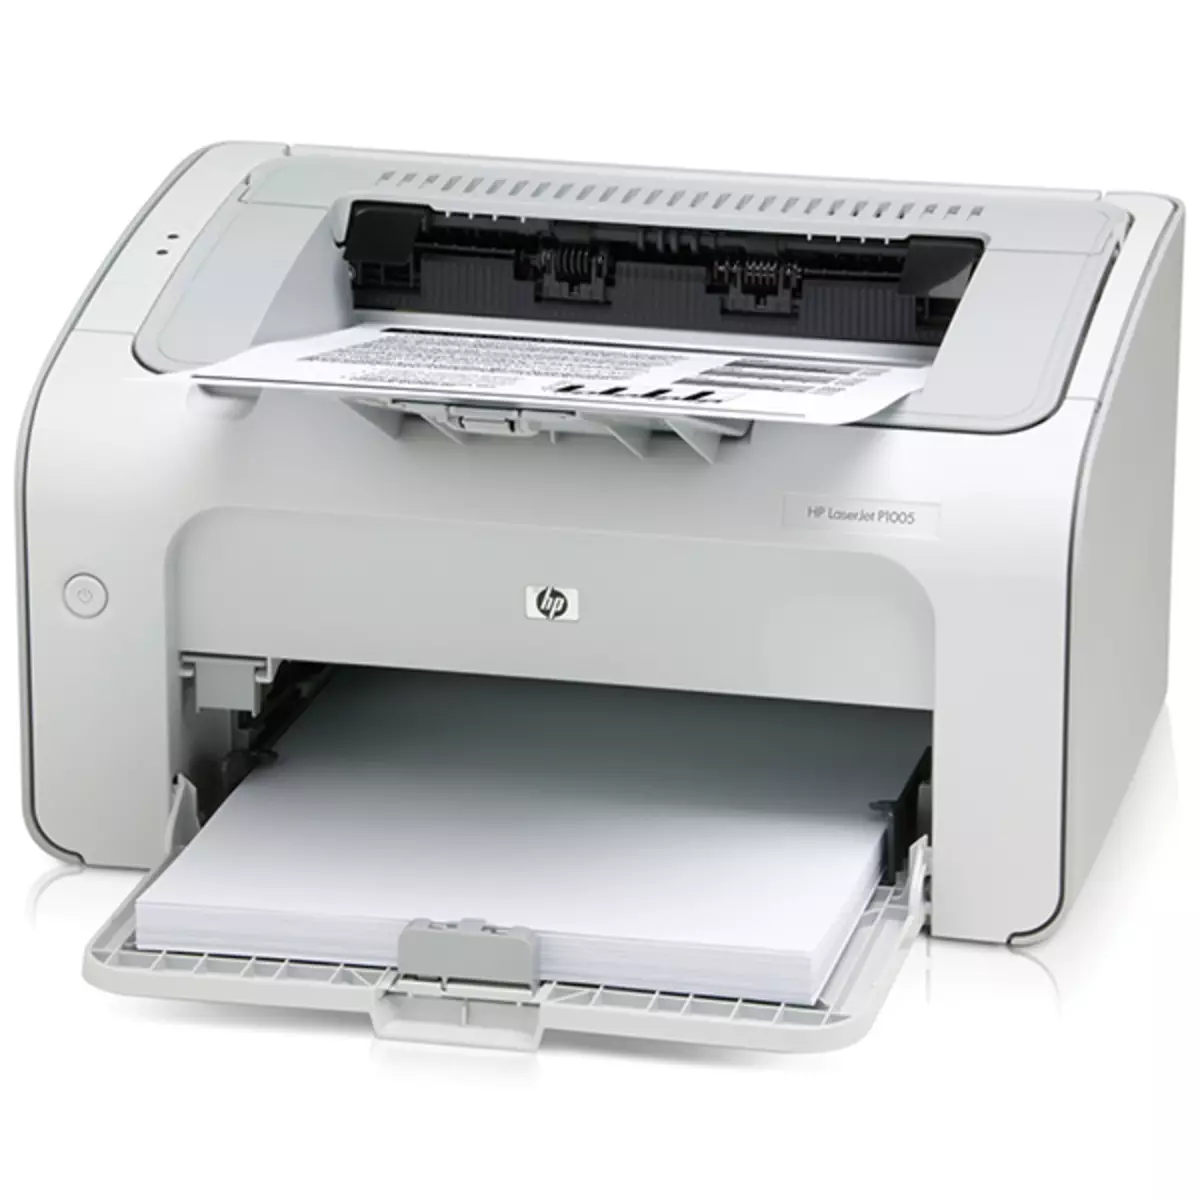 Laden Sie die Treiber für den Drucker HP LaserJet P1005 herunter